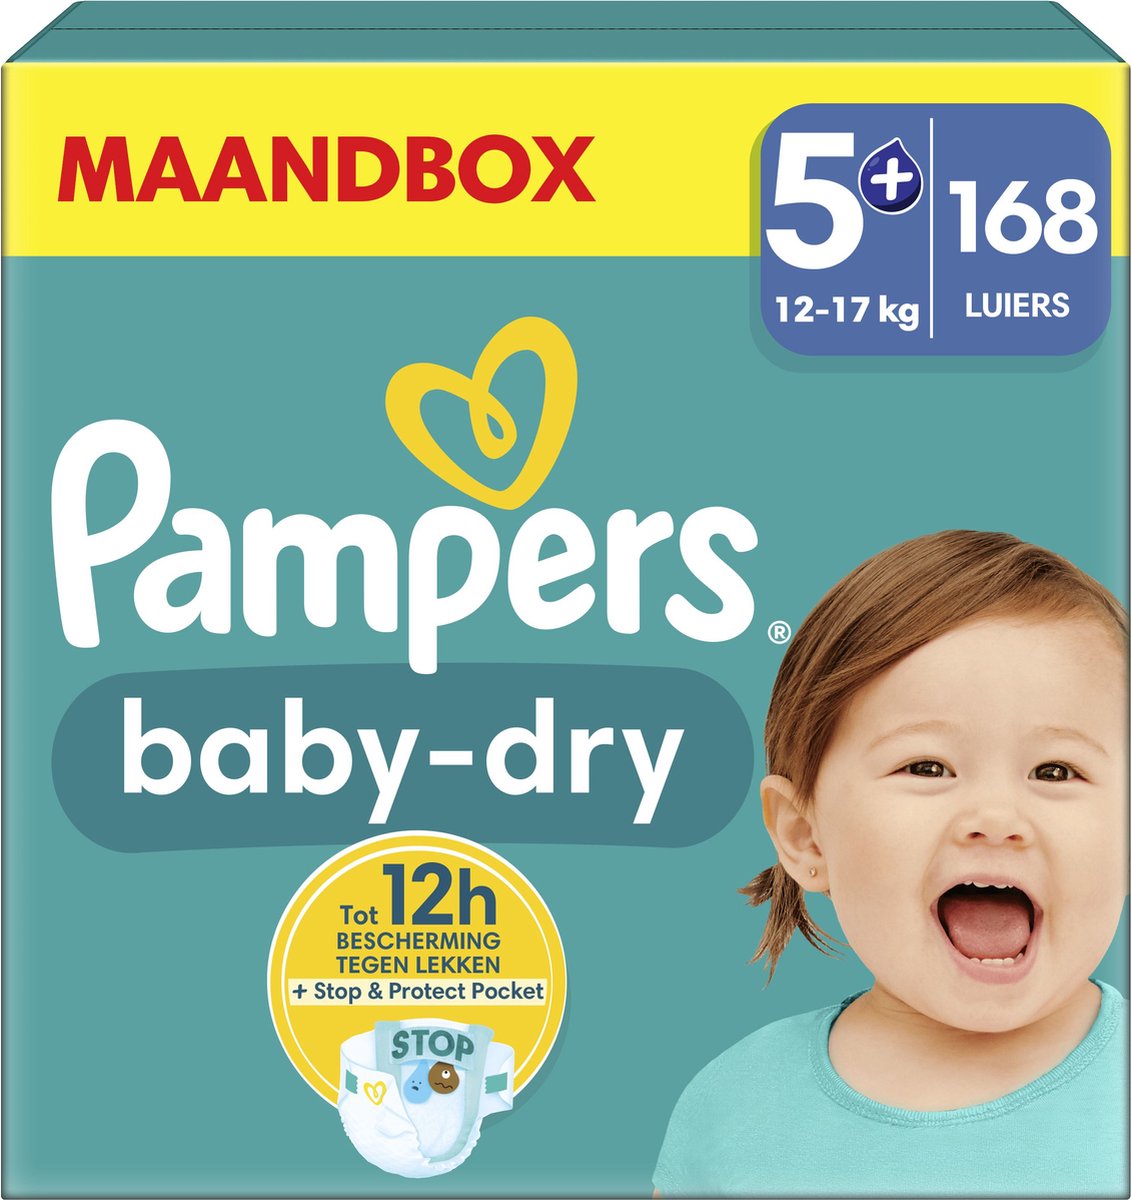 Pampers Baby-Dry - Maat 5+ (12kg-17kg) - 168 Luiers - Maandbox - Pampers